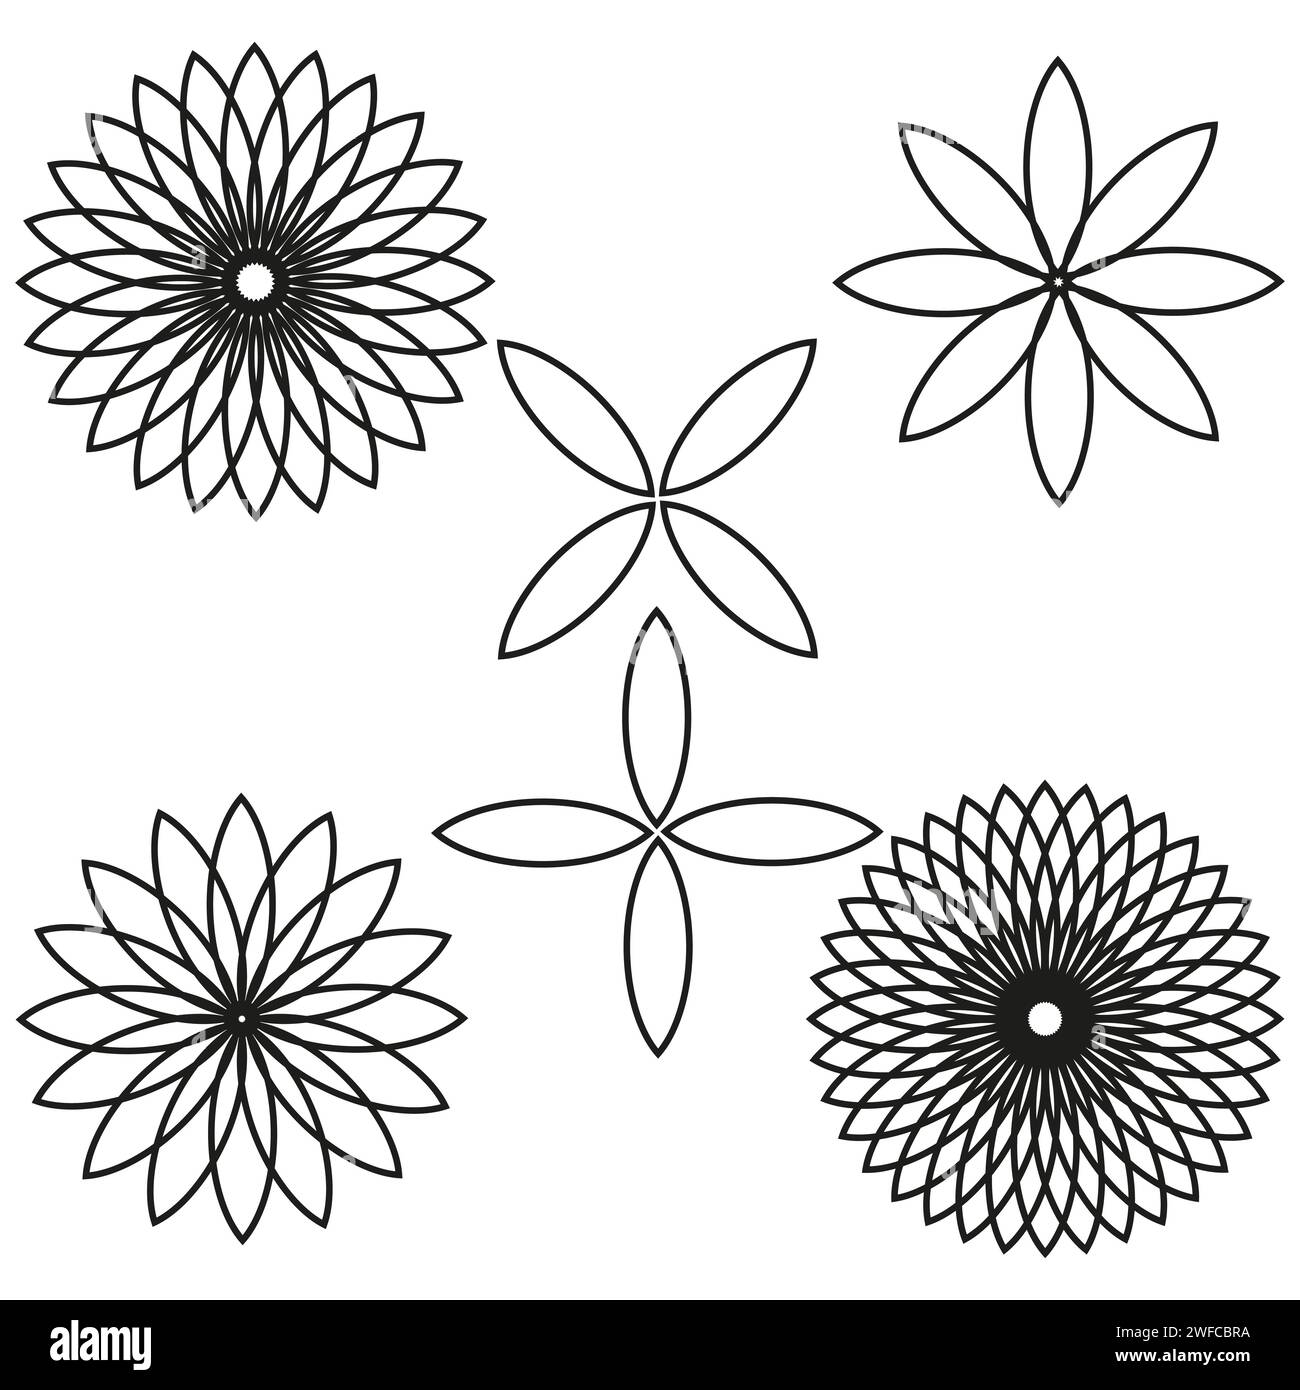 Icone di fiori impostate in stile astratto. Sfondo estivo floreale. Illustrazione vettoriale. Immagine stock. EPS 10. Illustrazione Vettoriale